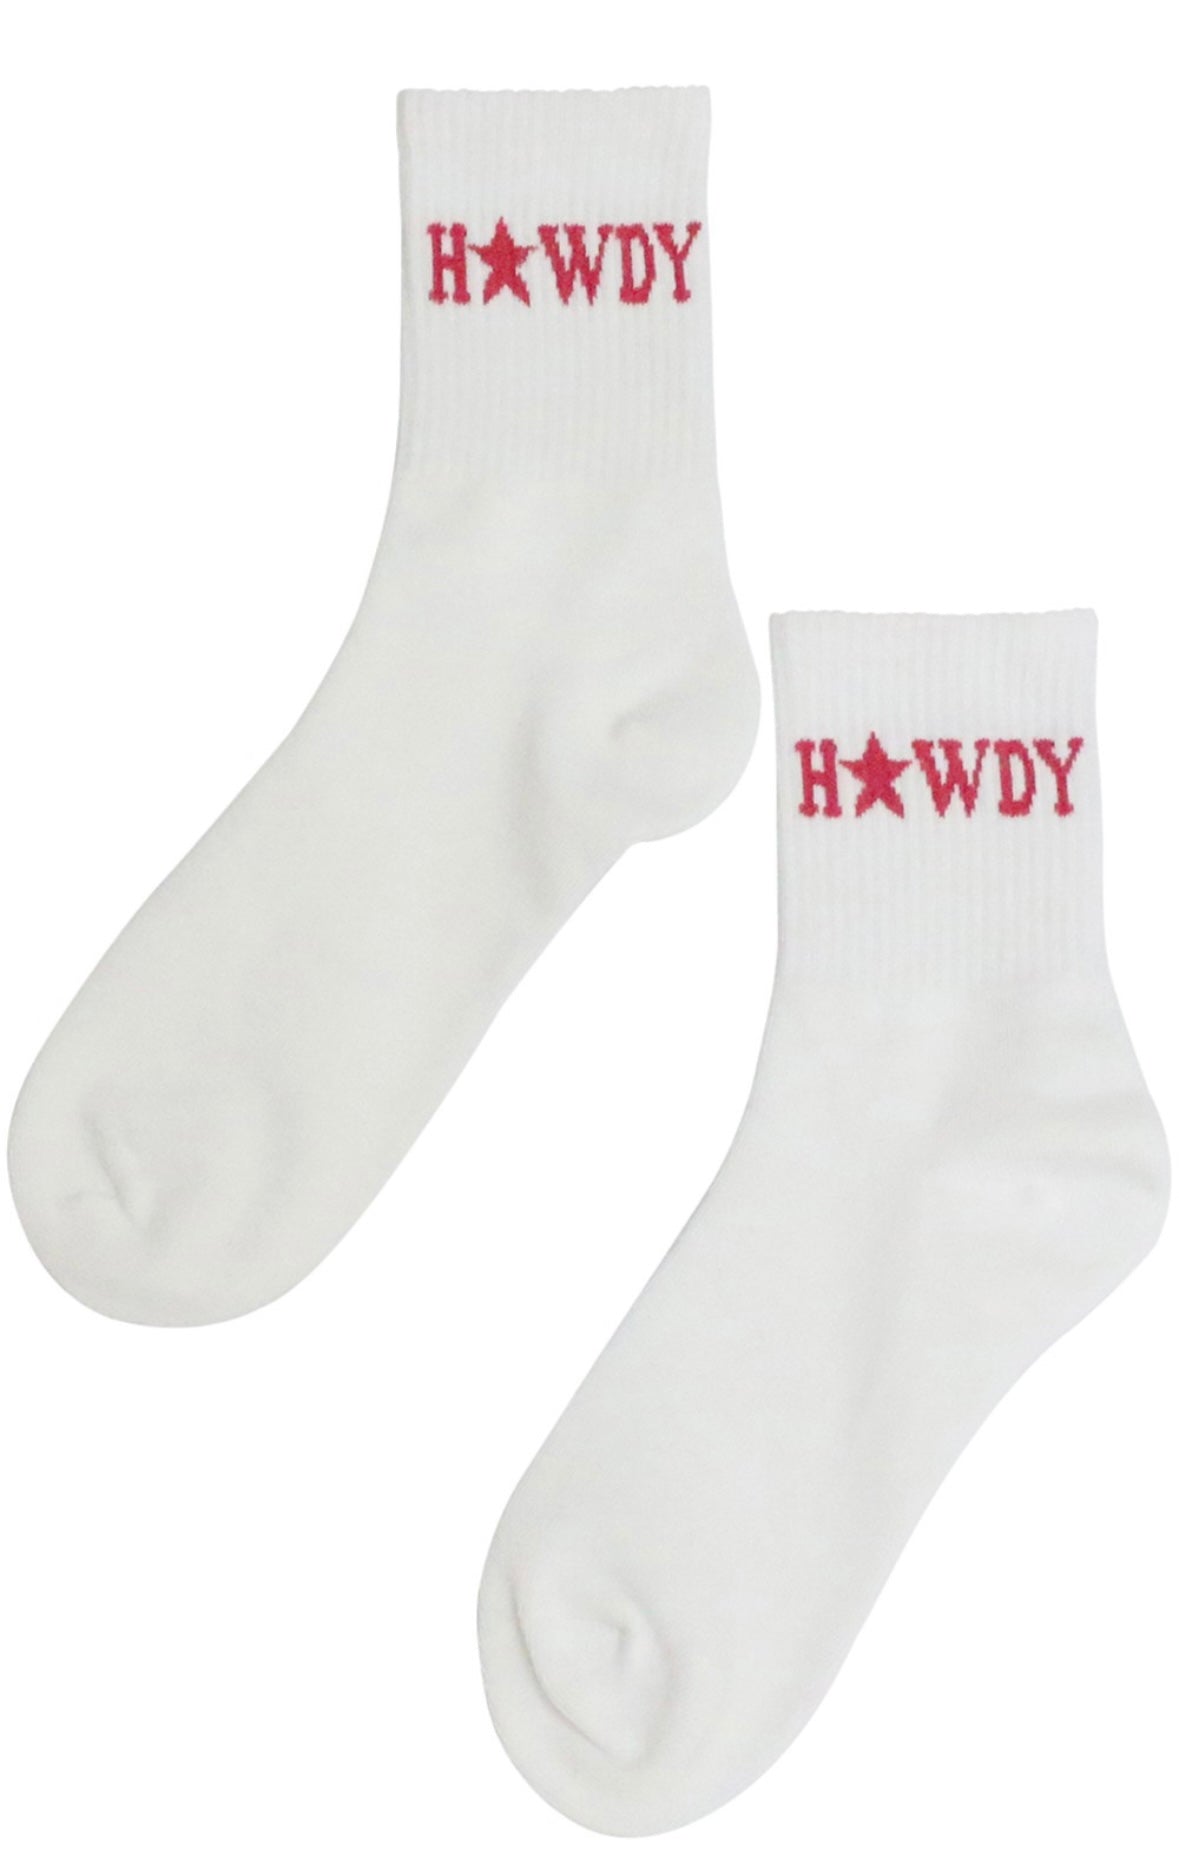 Howdy Socks